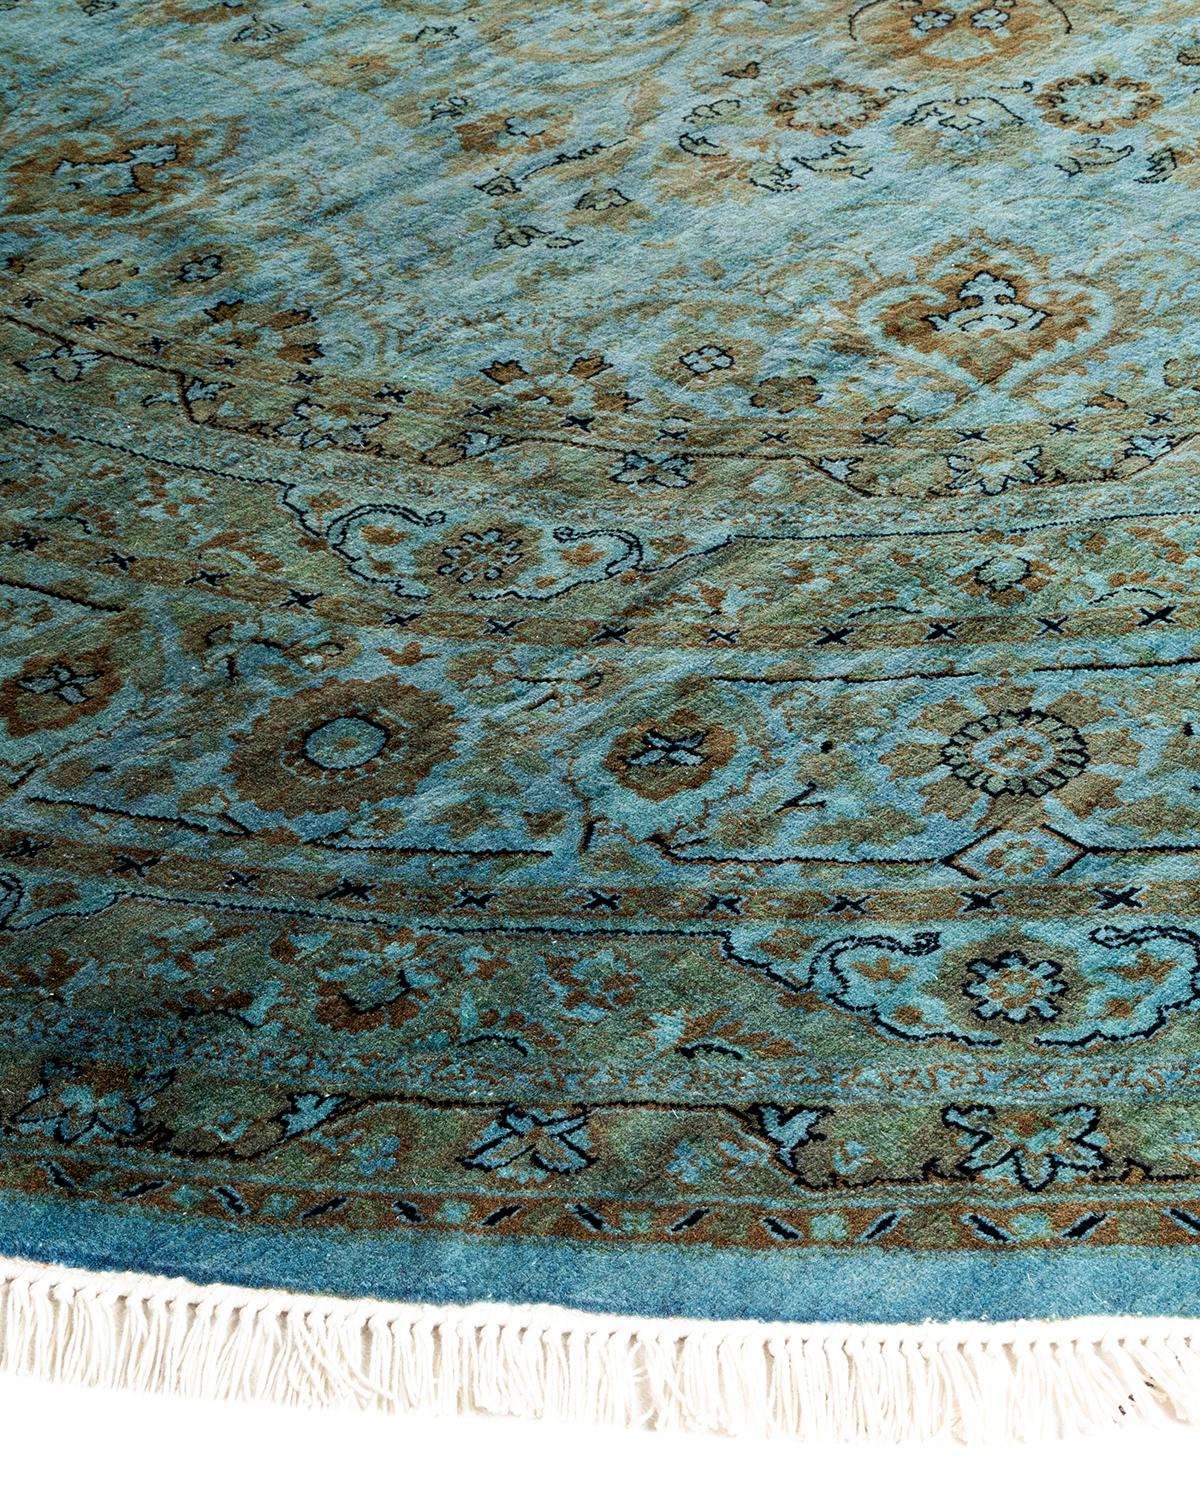 Vibrance-Teppiche sind der Inbegriff von Klassik mit Pfiff: traditionelle Muster in leuchtenden Farben gefärbt. Jeder handgeknüpfte Teppich wird mit einem 100% natürlichen botanischen Farbstoff gewaschen, der verborgene Nuancen in den Mustern